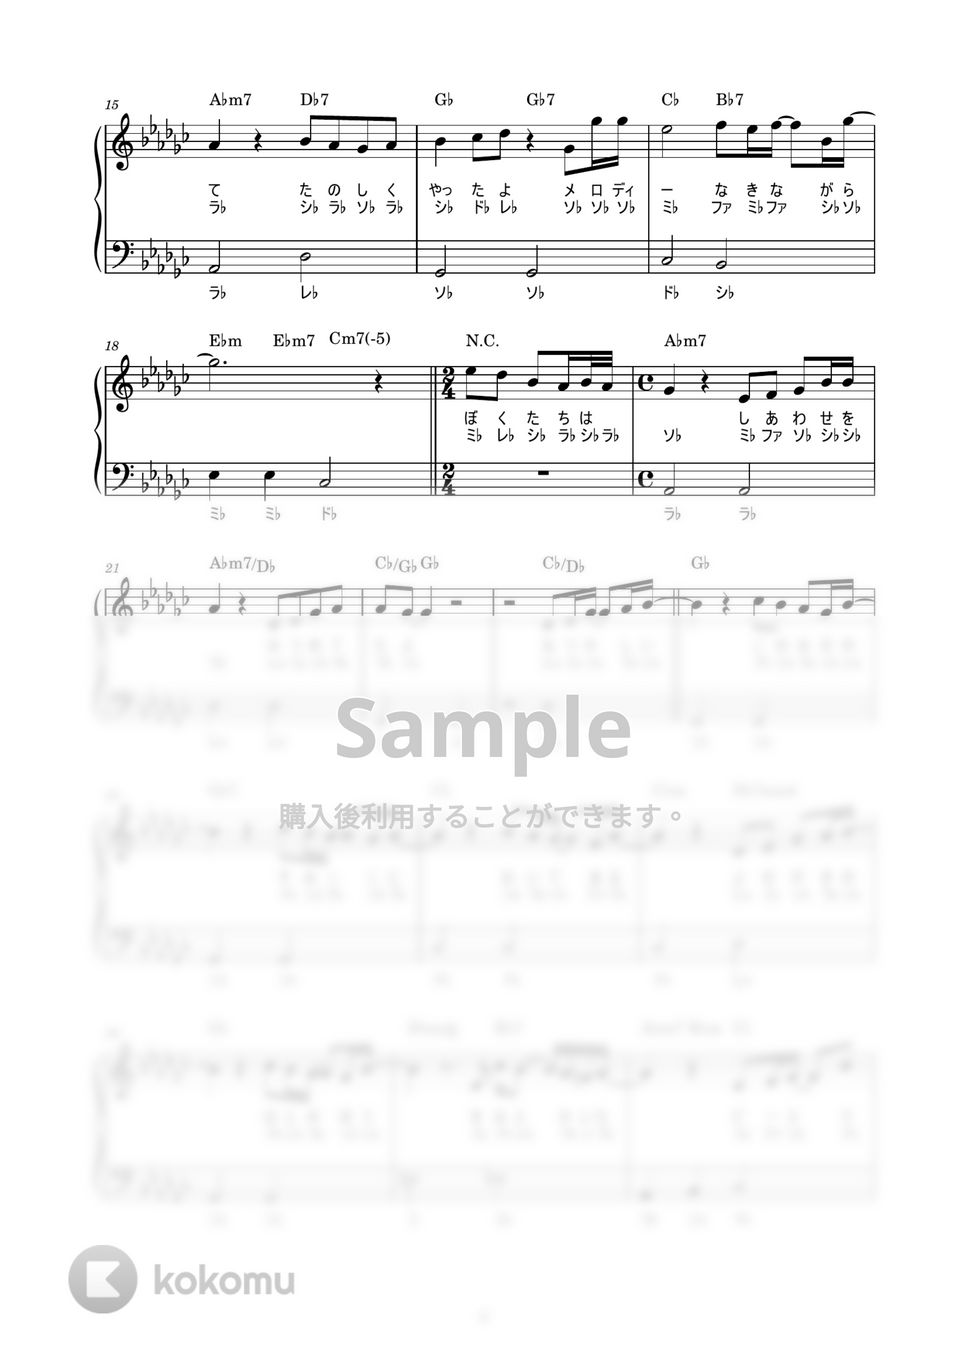 玉置浩二 - メロディー (かんたん / 歌詞付き / ドレミ付き / 初心者) by piano.tokyo